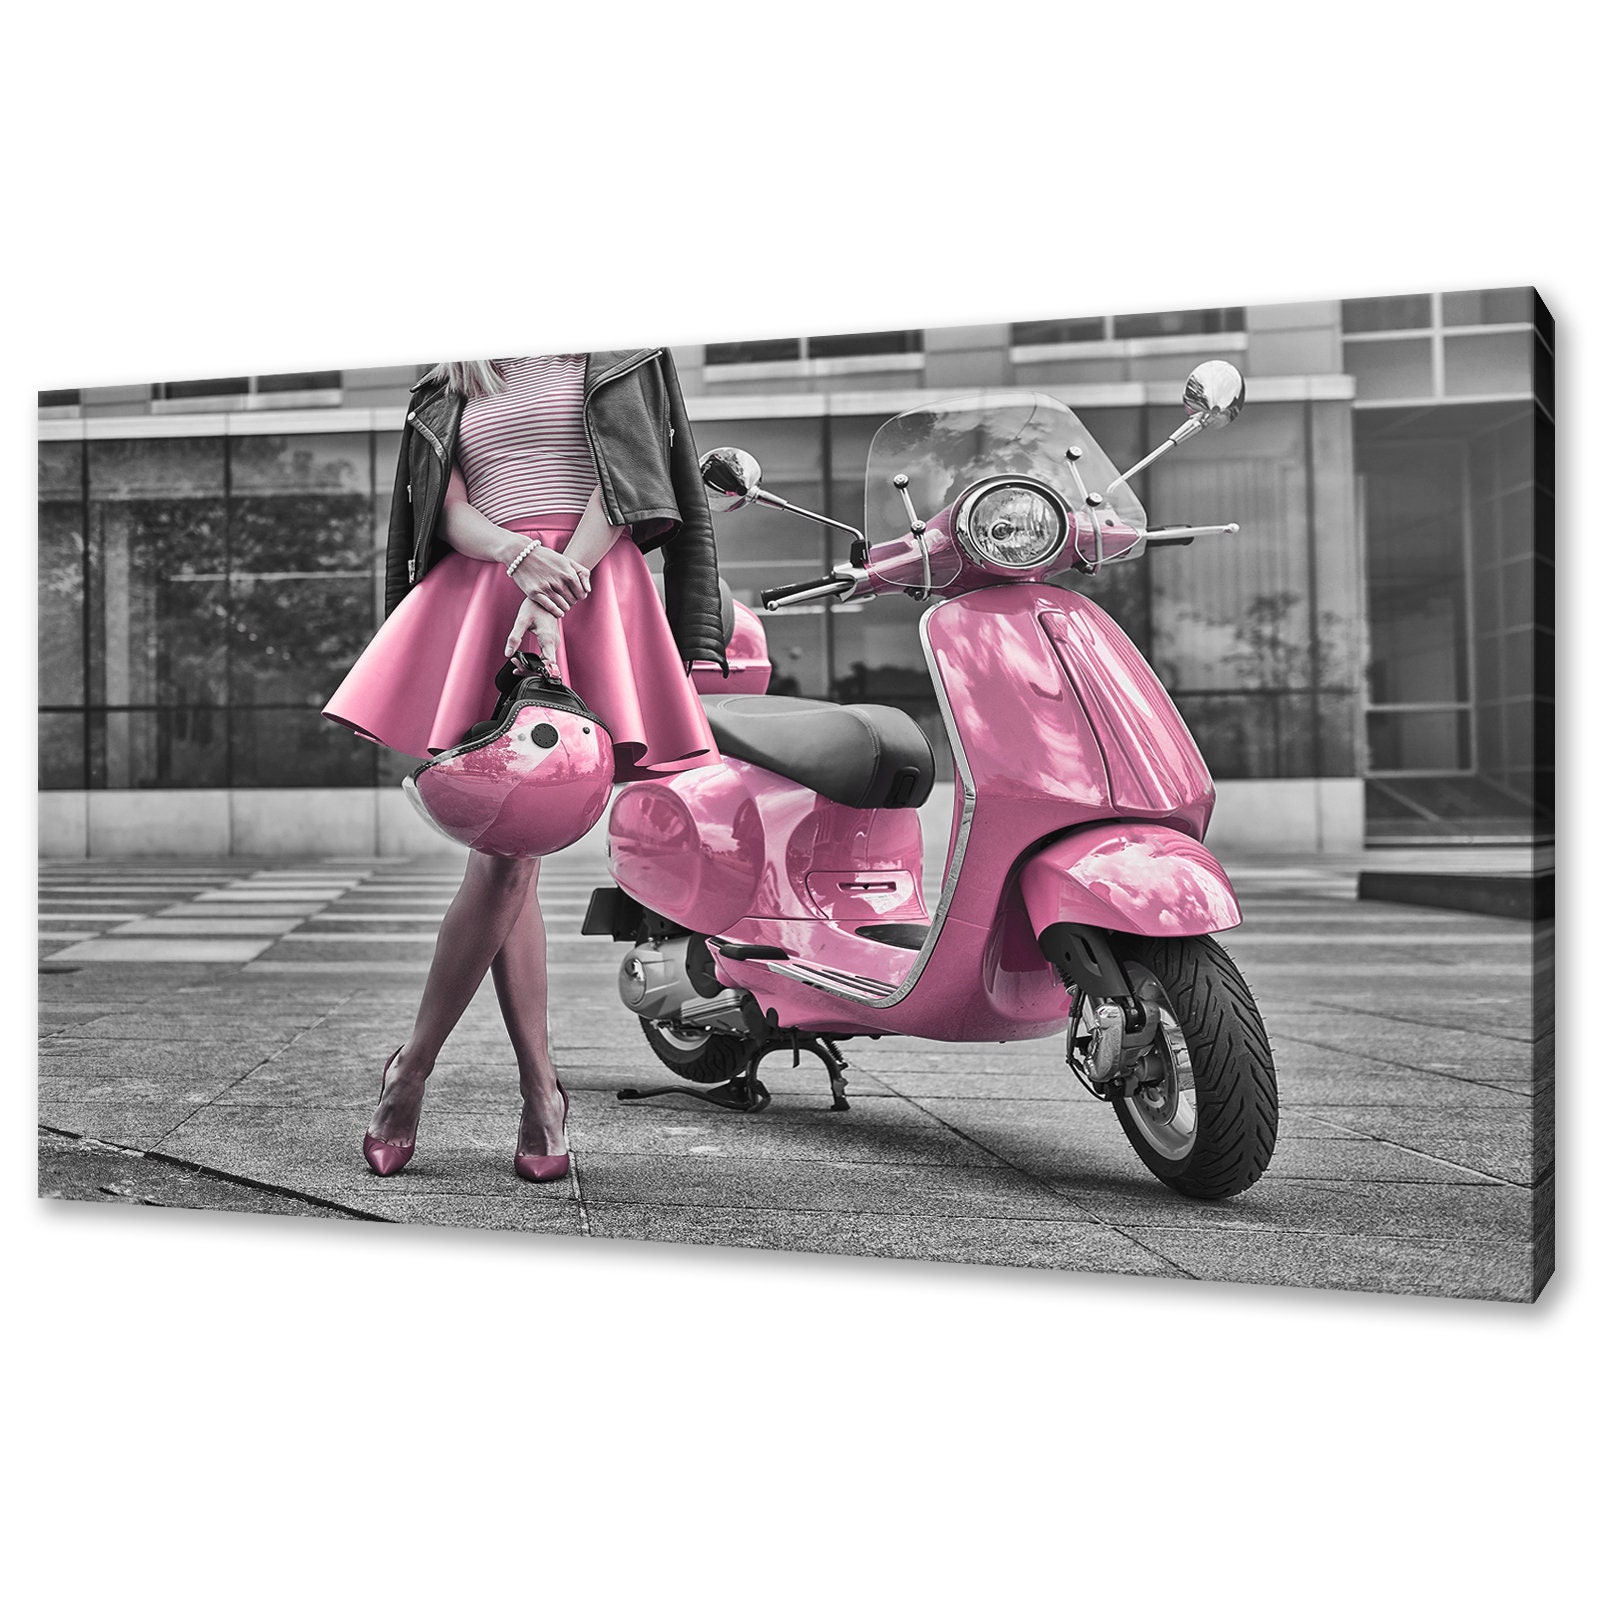 Objeción Cúal ambición Classic Italian Pink Vespa Scooter Vintage Modern Design Home - Etsy Israel